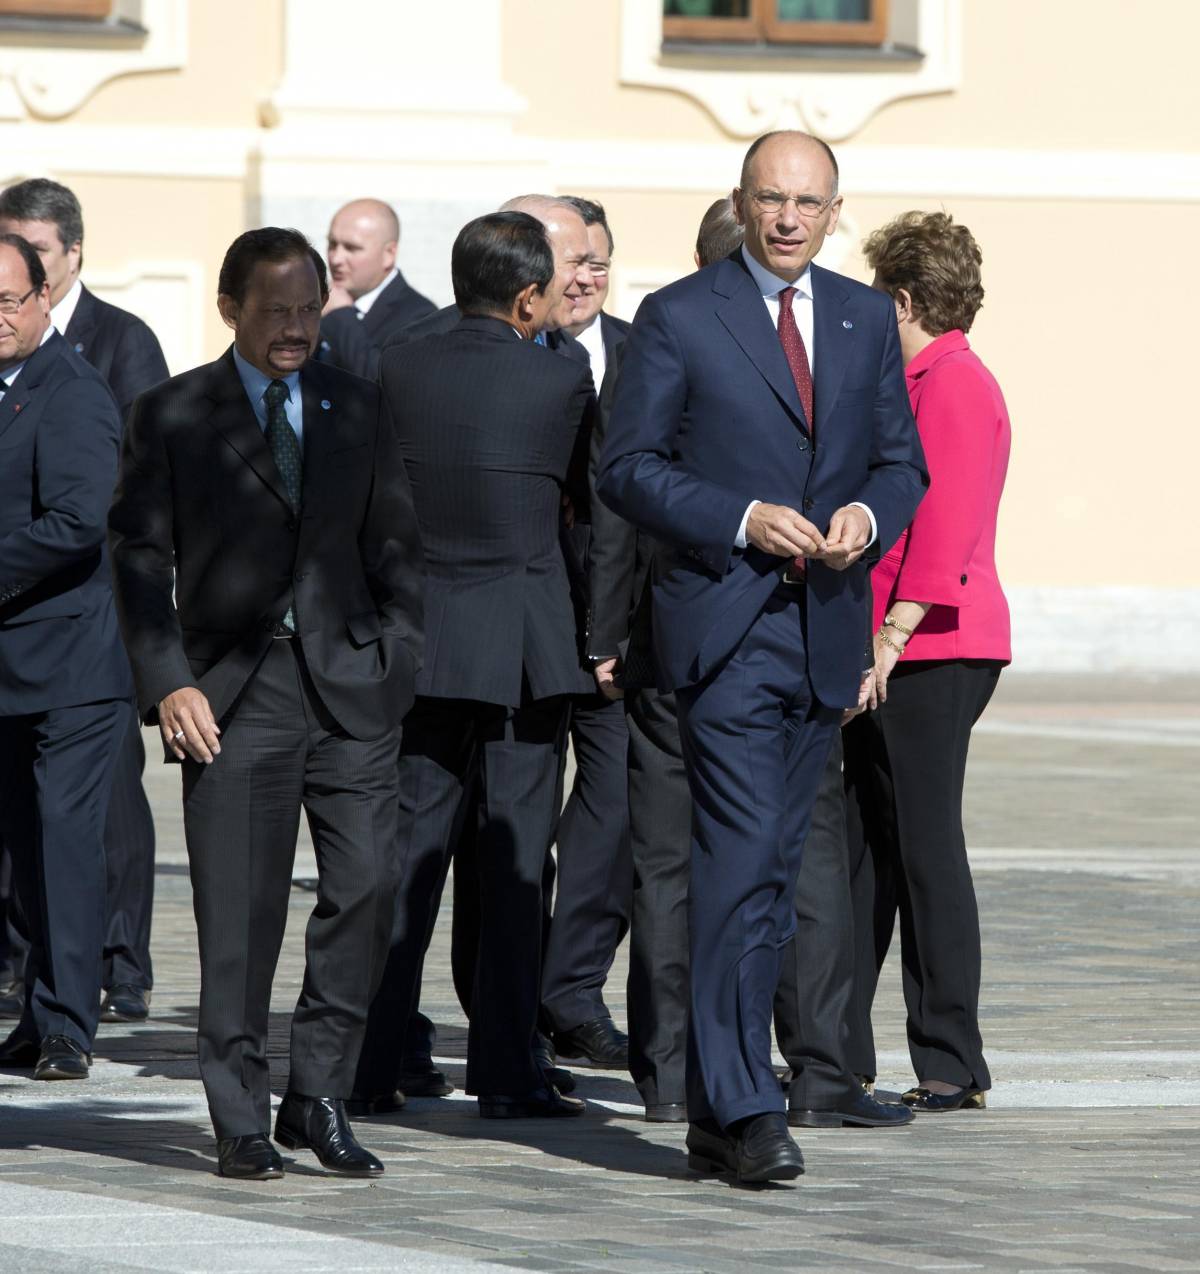 Italia promossa al G20. Letta: "Siamo usciti da dietro la lavagna"